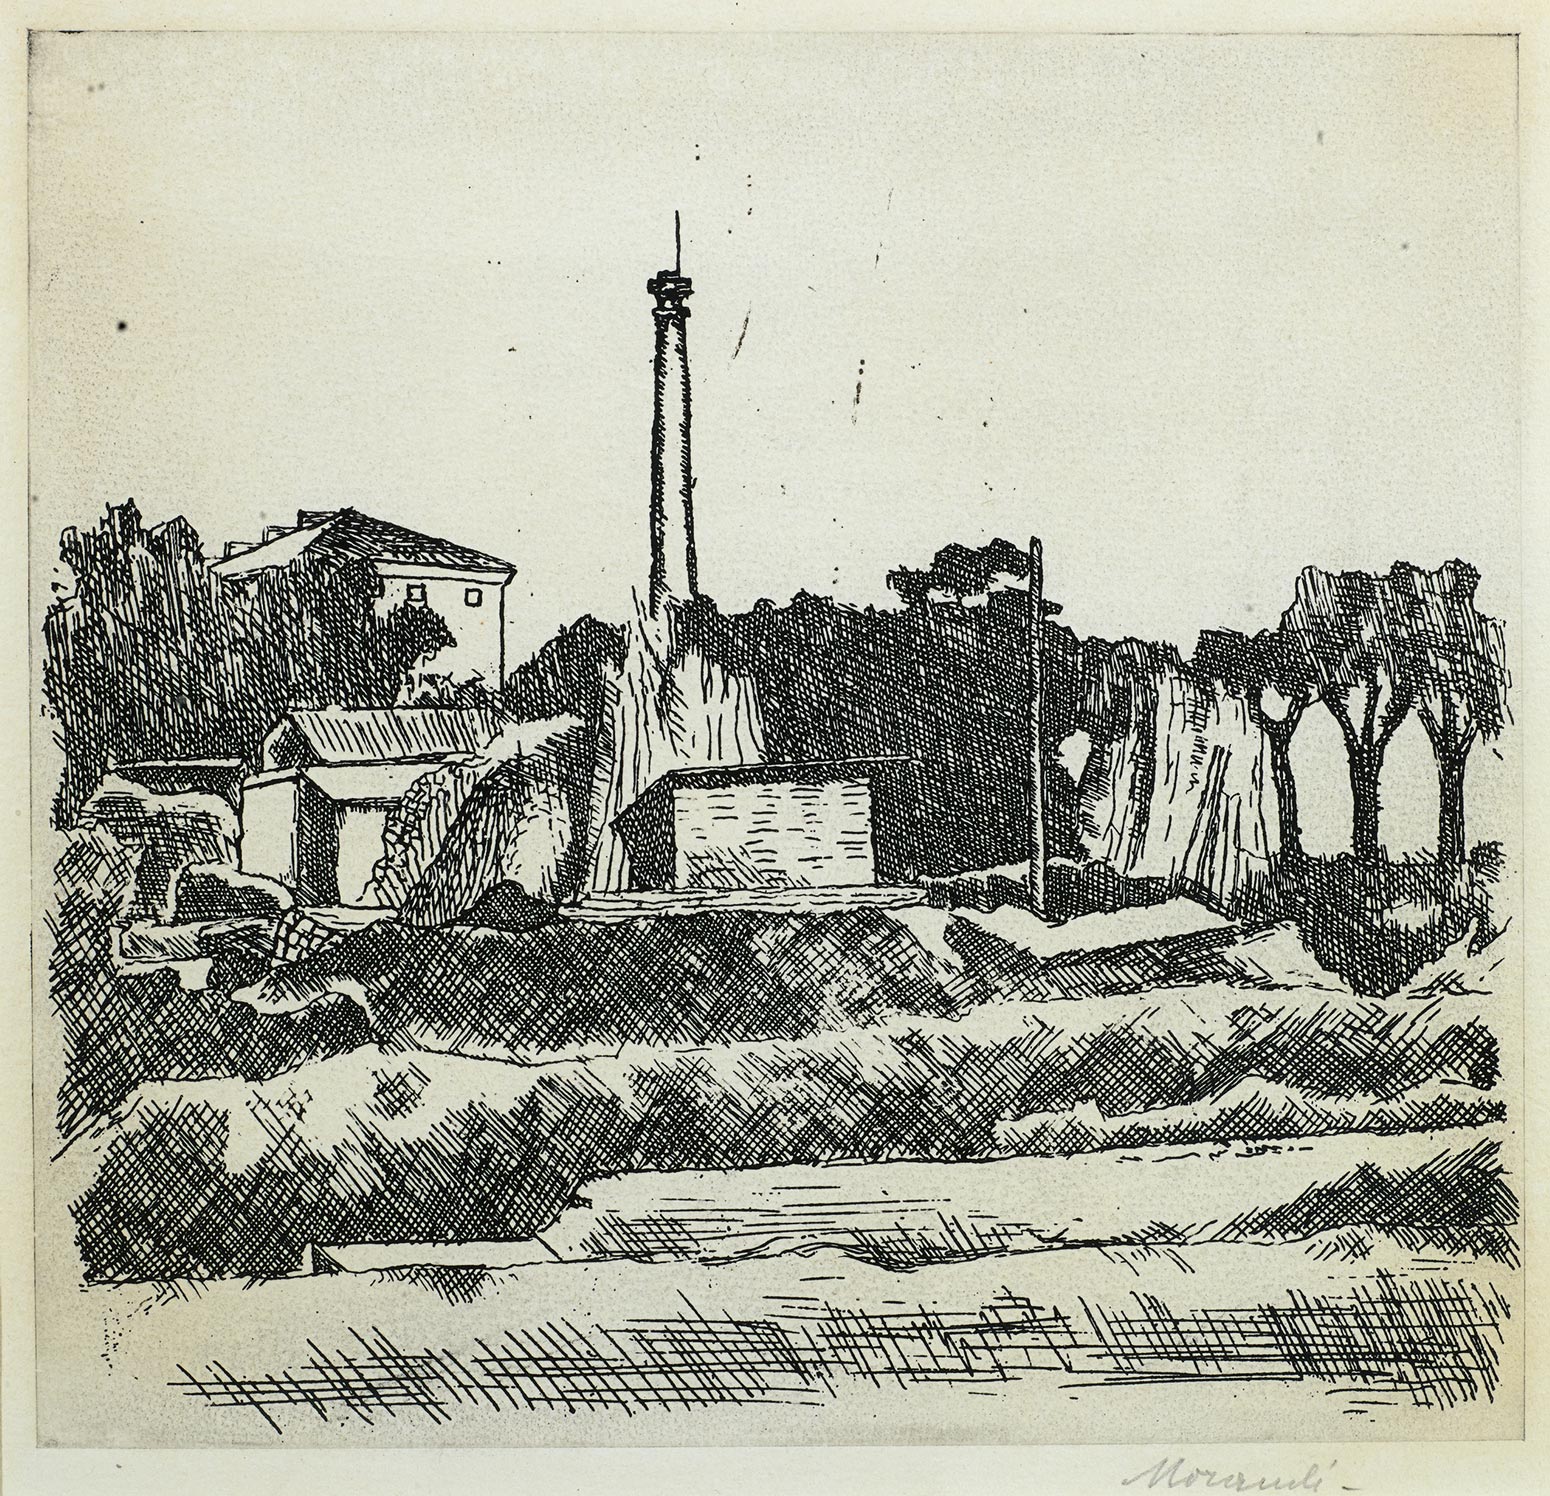 Giorgio Morandi, Landscape with Chimney, Outside Bologna, 1926